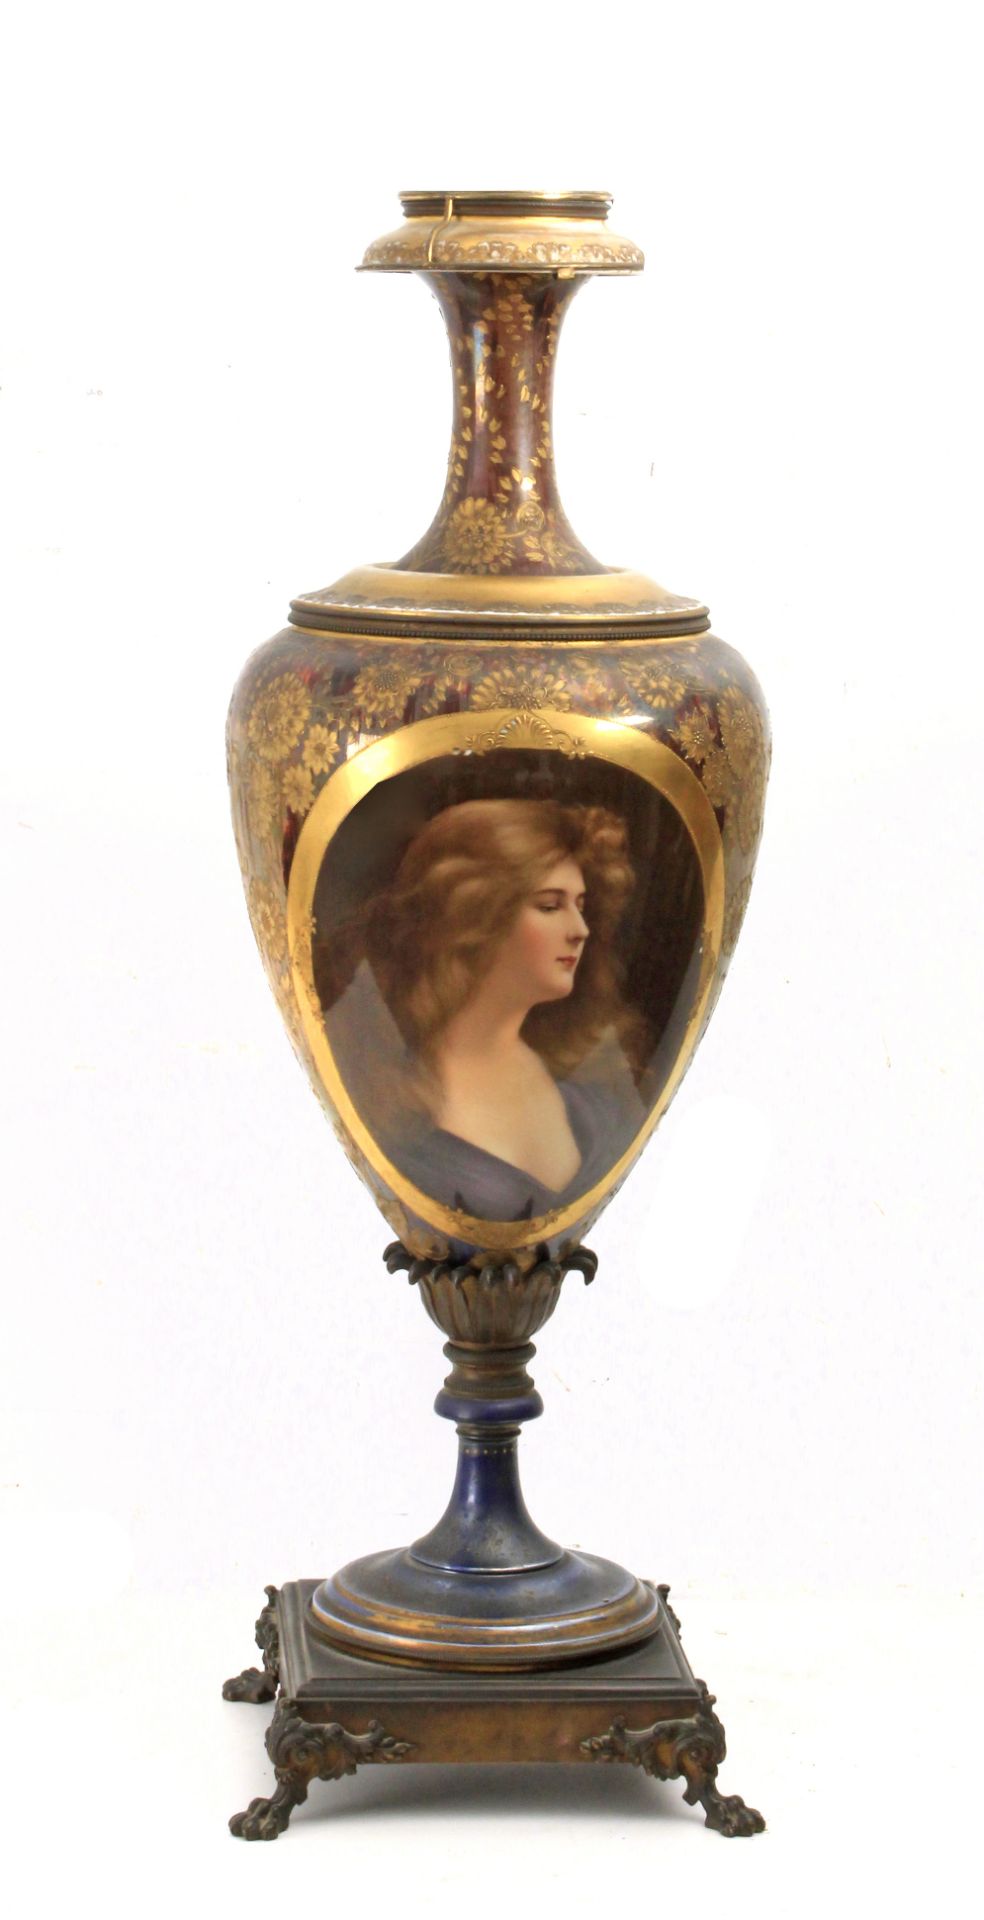 A porcelain vase signed Warner, Germany circa 1880